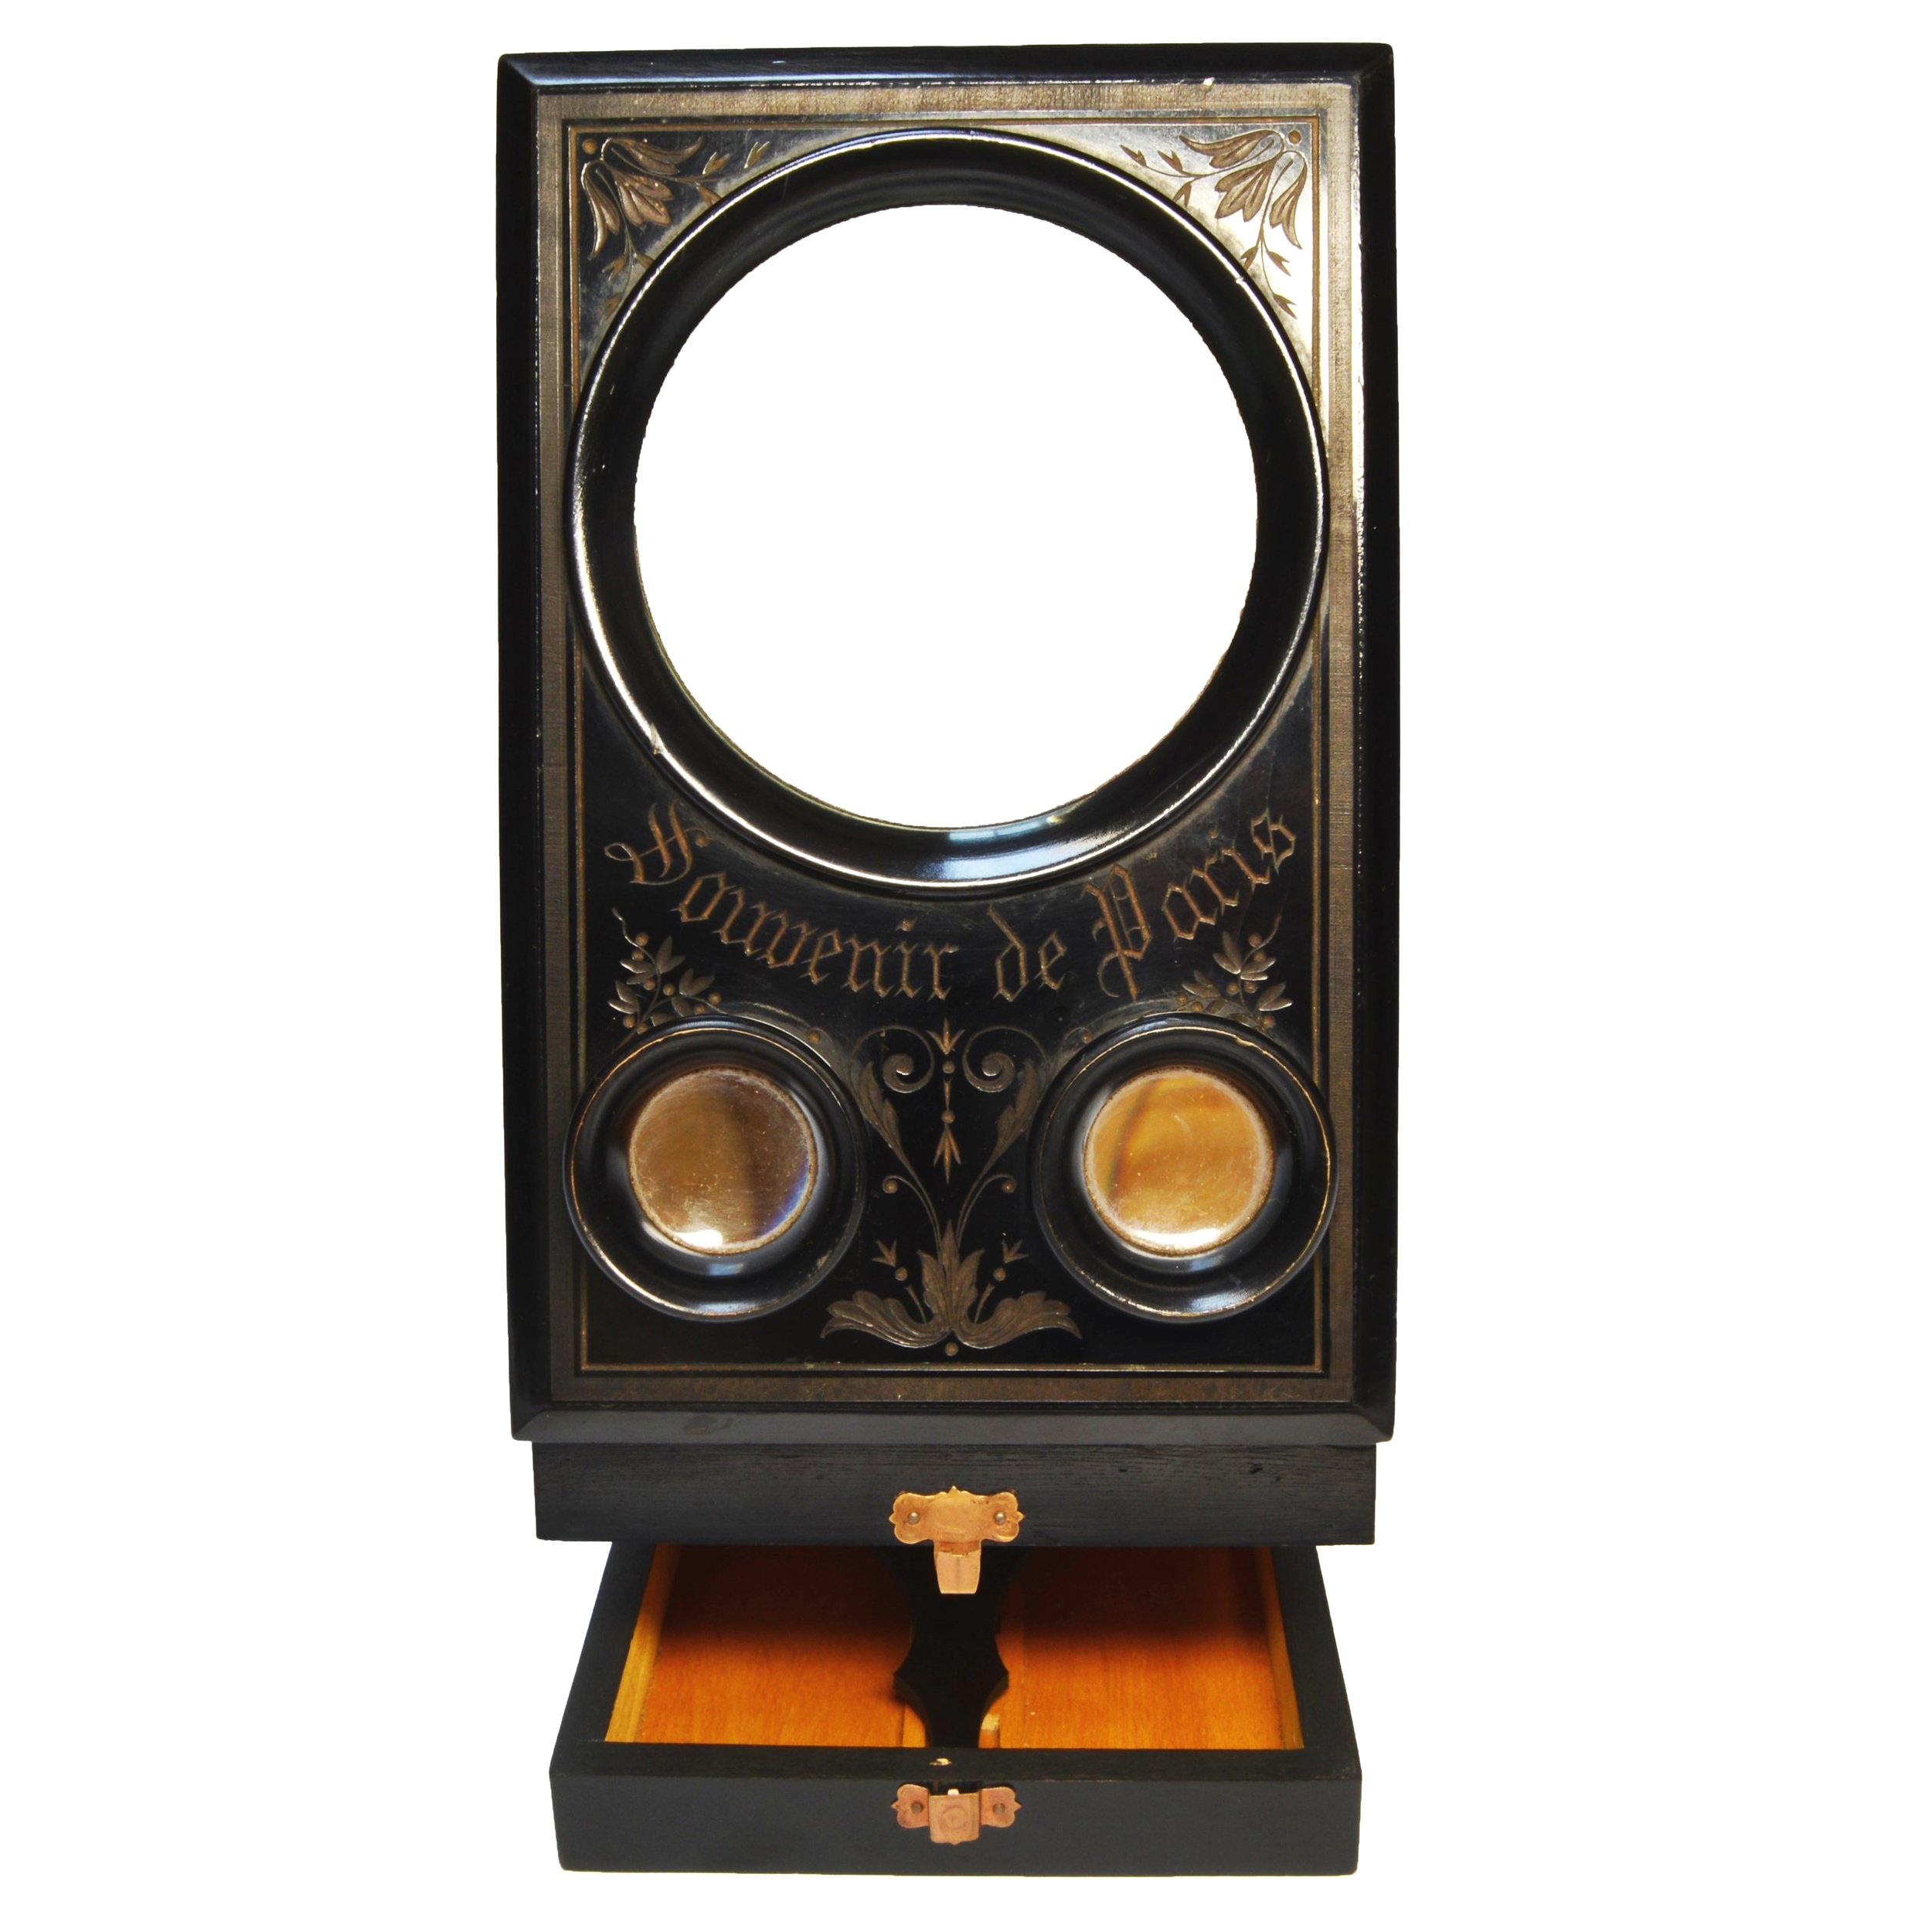 Souvenir de Paris Graphoscope Stereoscope Stereoviewer